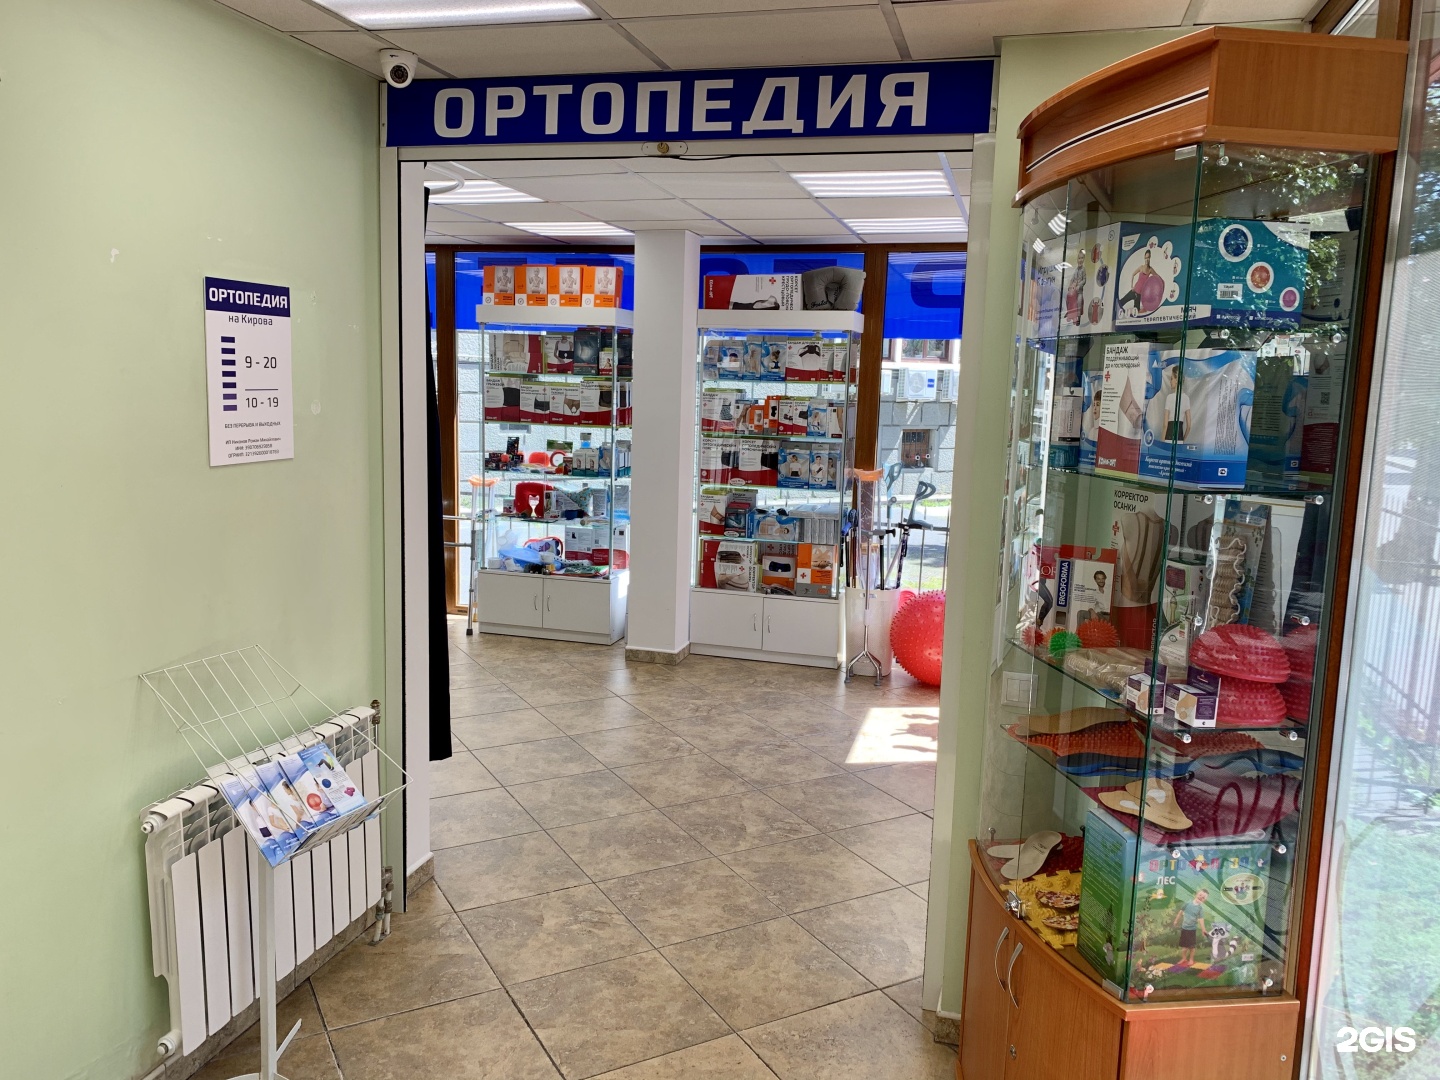 Магазин Ортопедических Товаров